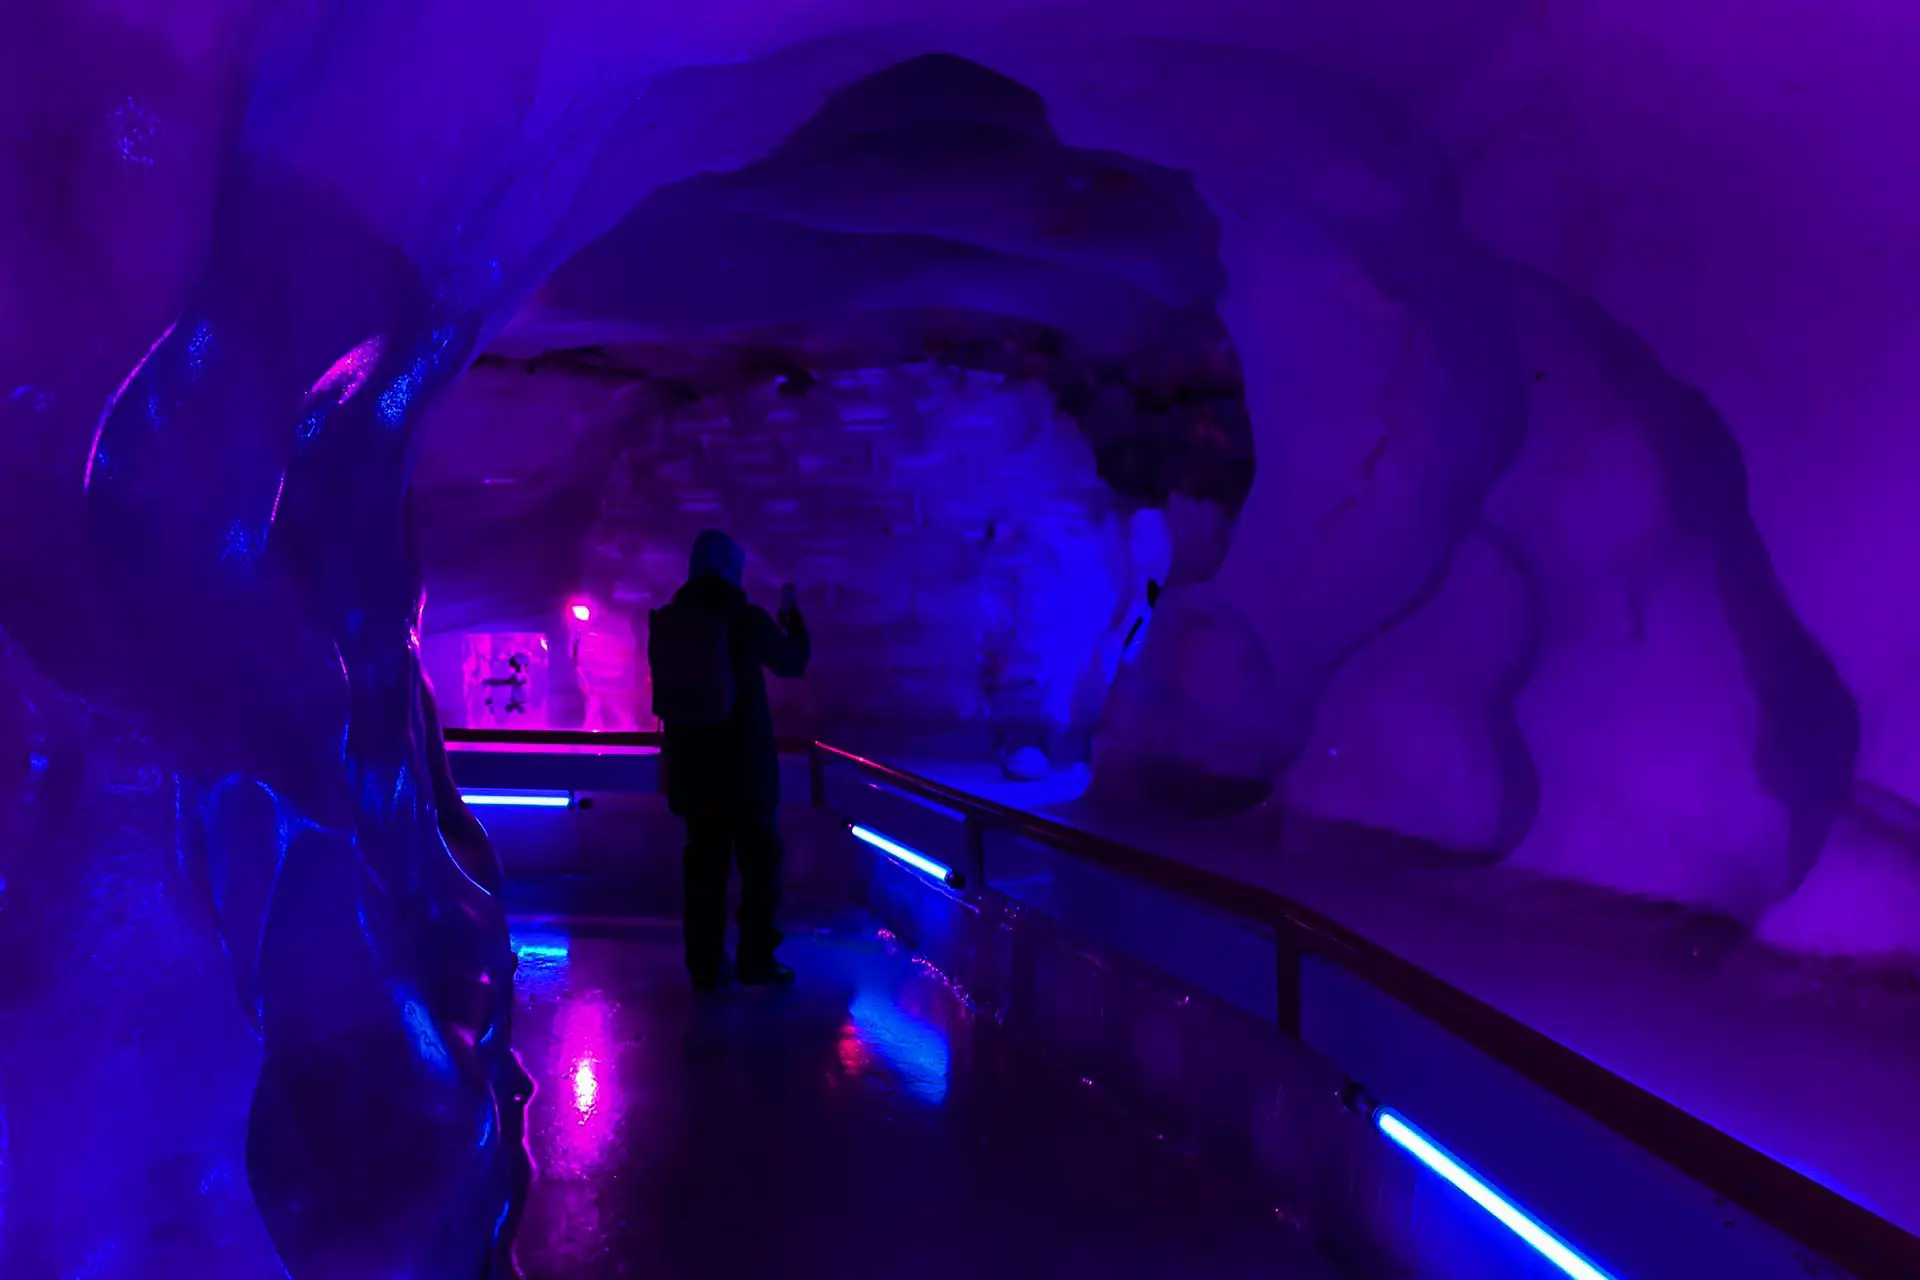 Ice Cave auf dem Titlis - ein bekanntes Ausflugsziel der Schweiz